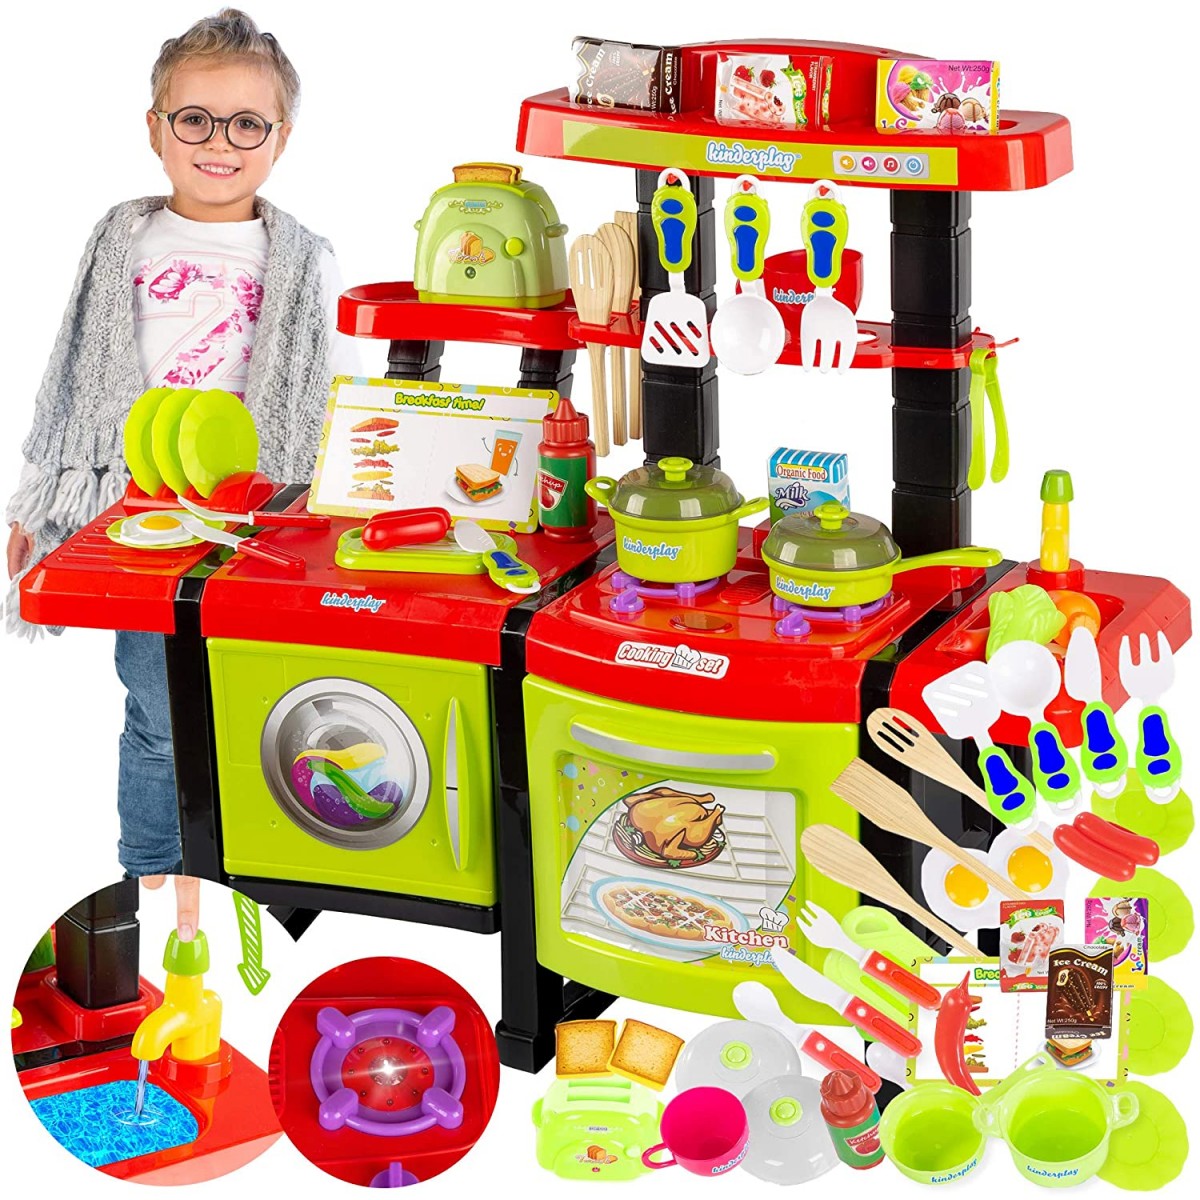 Cucina con 36 accessori giocattolo per bambini - Kinderplay